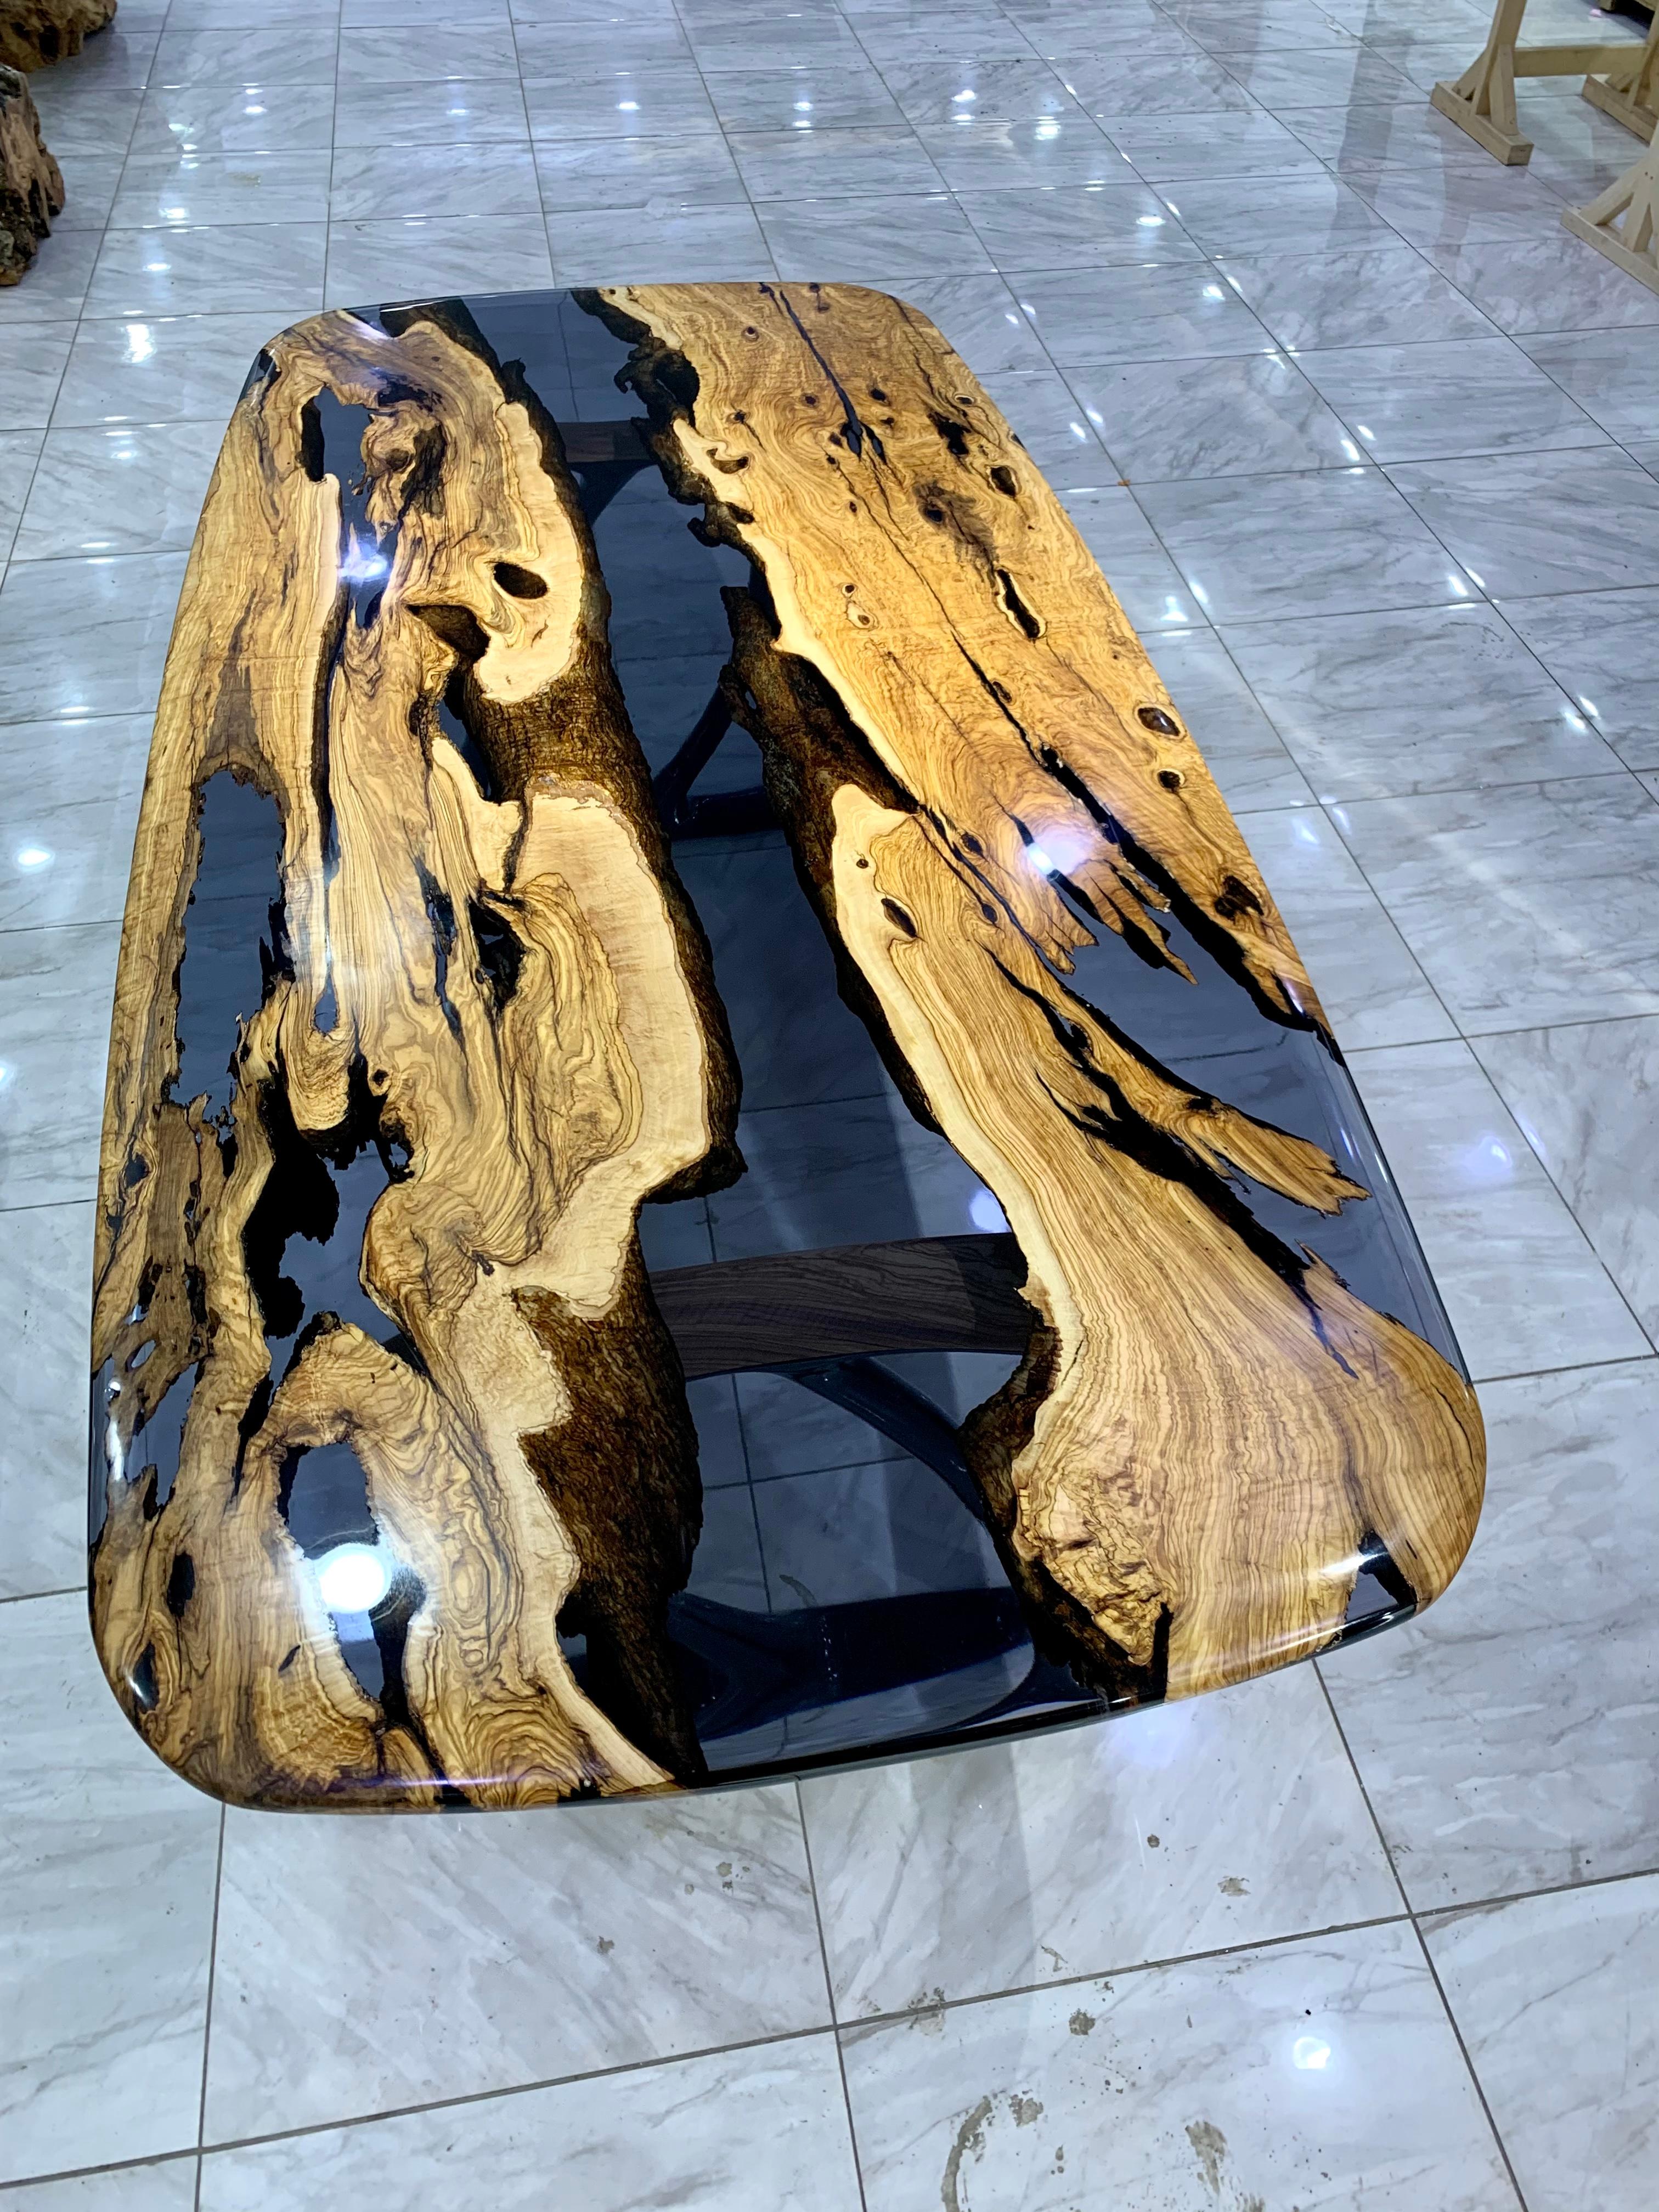 Table en époxy Olive sur mesure

Cette superbe table est fabriquée en bois d'Oliver méditerranéen. La beauté unique des courbes naturelles du bois d'olivier combinées à l'époxy bleu se retrouve dans cette table.

Tous les bois ont leur propre forme